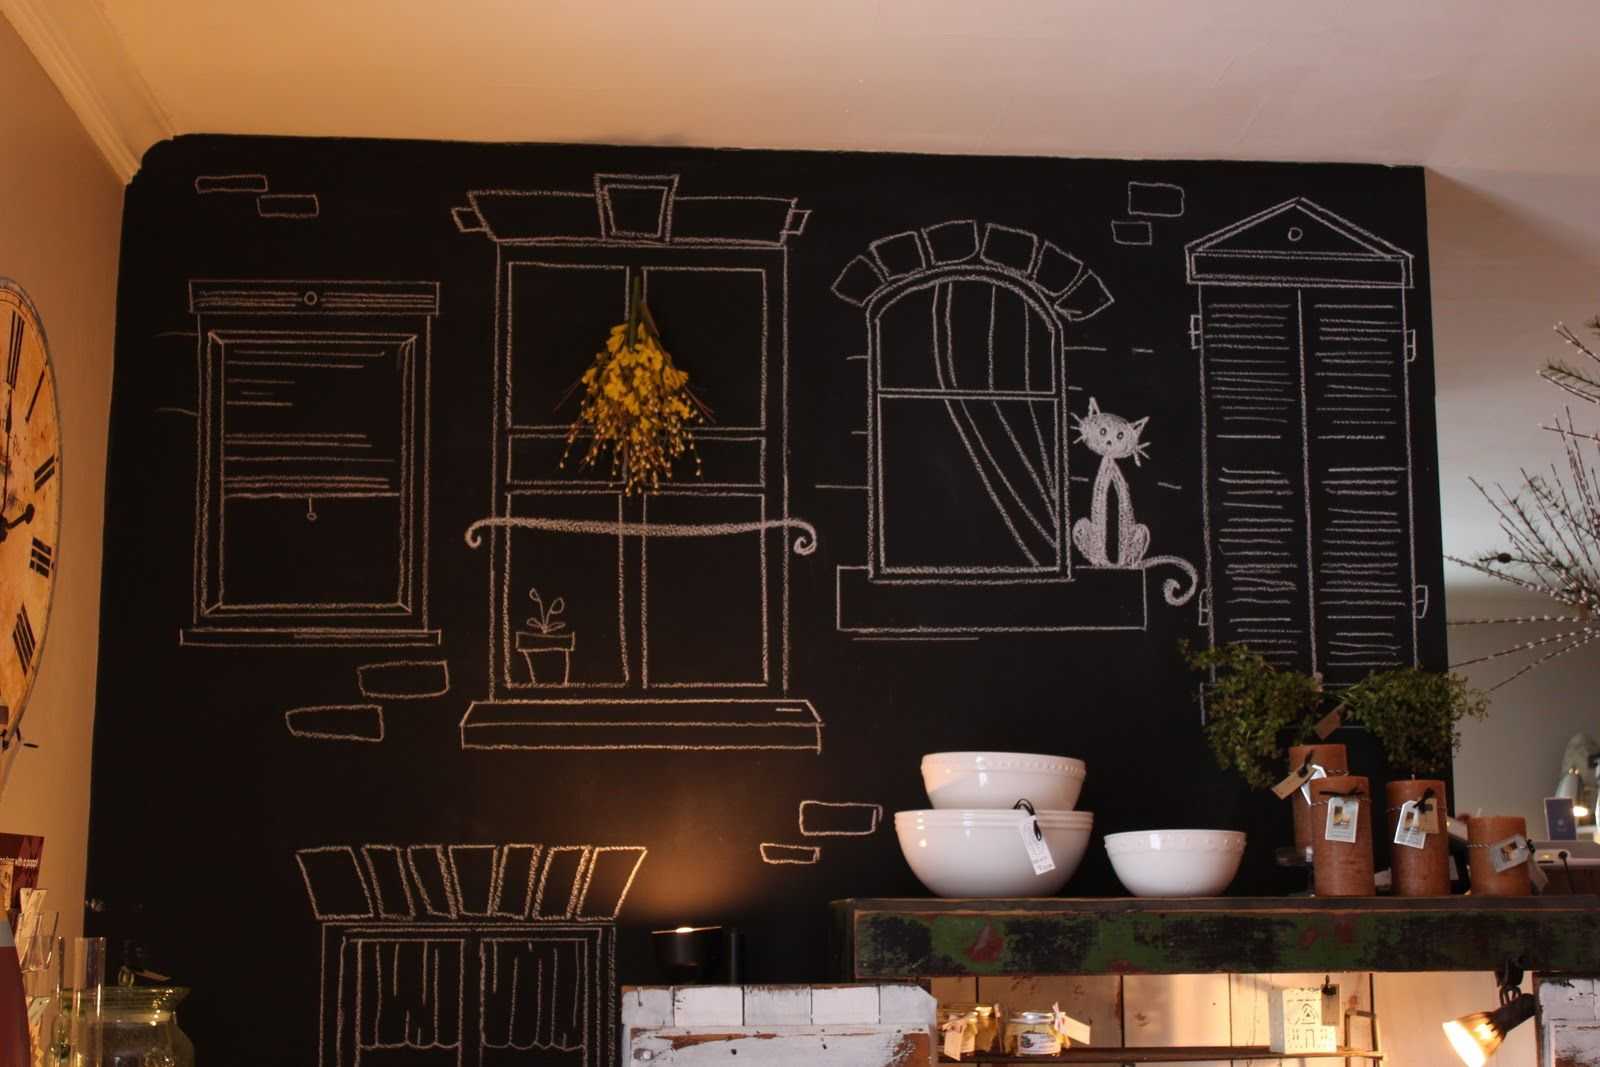 Изысканные картинки на кухню на стену, как популярный элемент декора